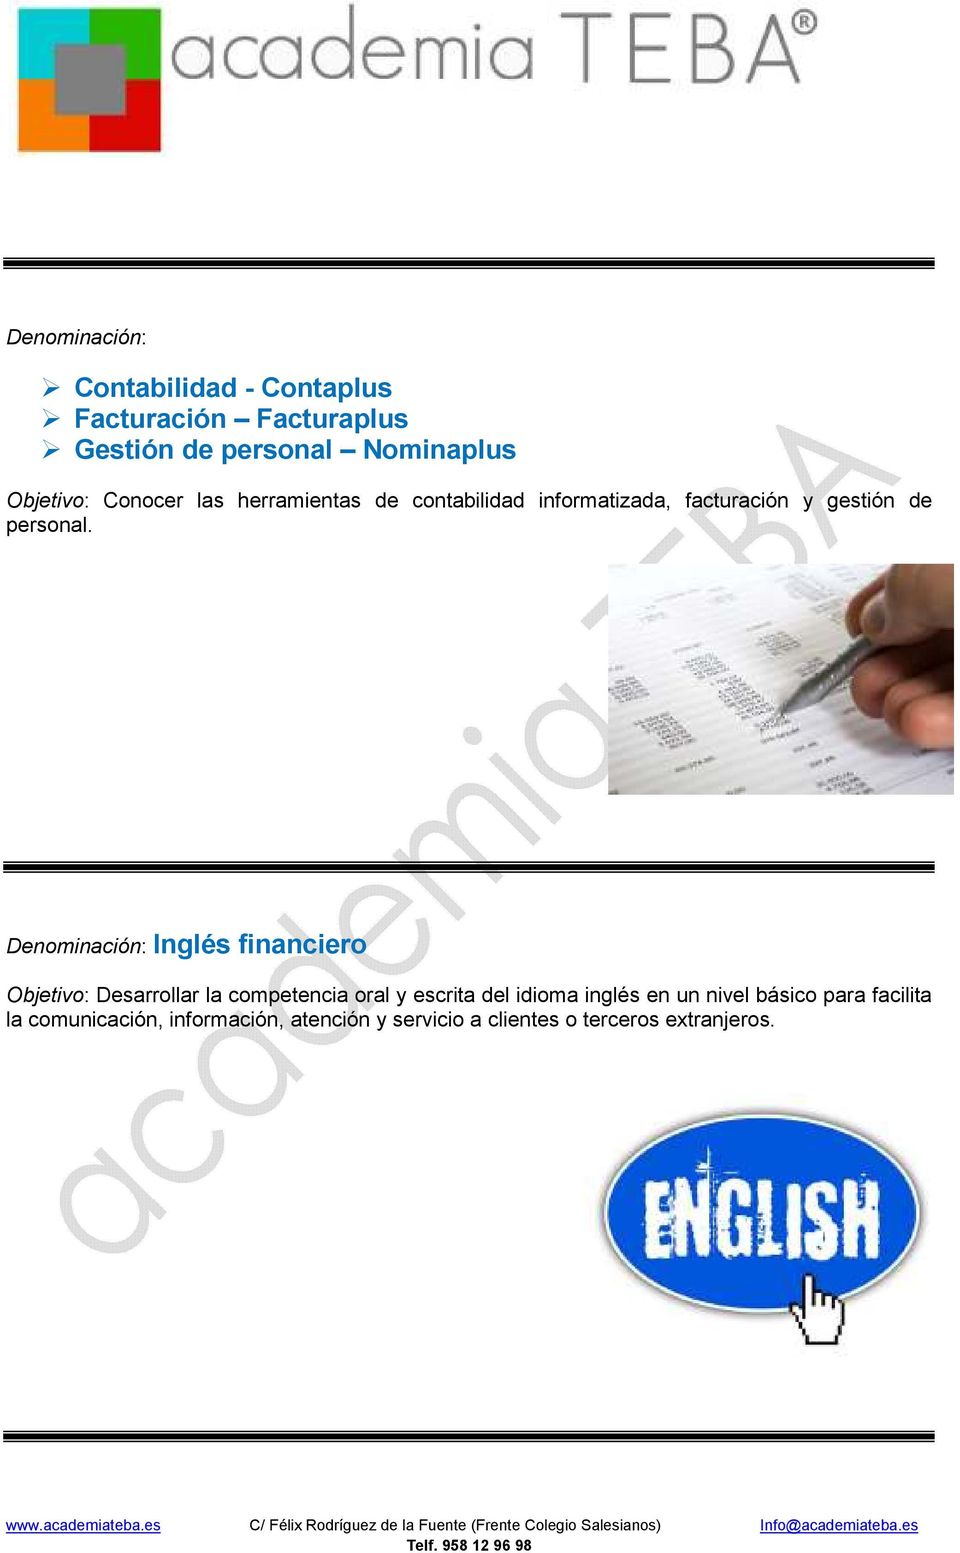 Denominación: Inglés financiero Objetivo: Desarrollar la competencia oral y escrita del idioma inglés